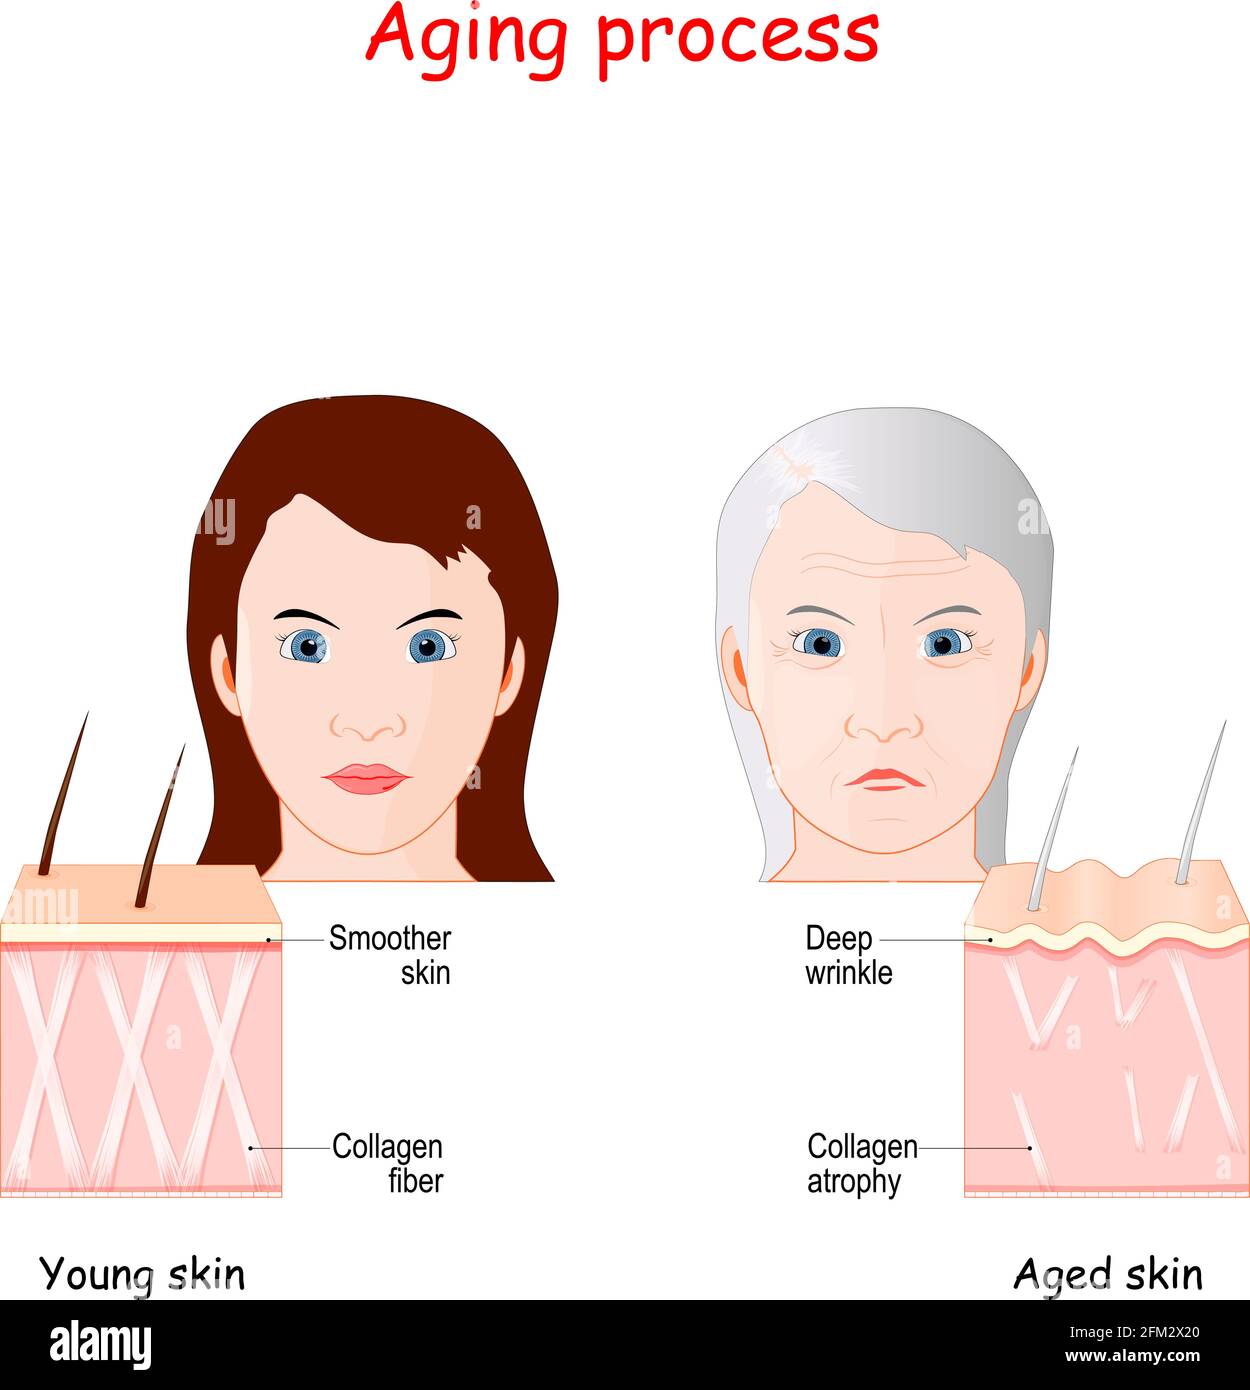 Confronto di processo di invecchiamento della pelle più giovane e più anziana. Pelle più liscia di ragazza con normali fibre di collagene e pelle di donna adulta con profonde rughe Illustrazione Vettoriale